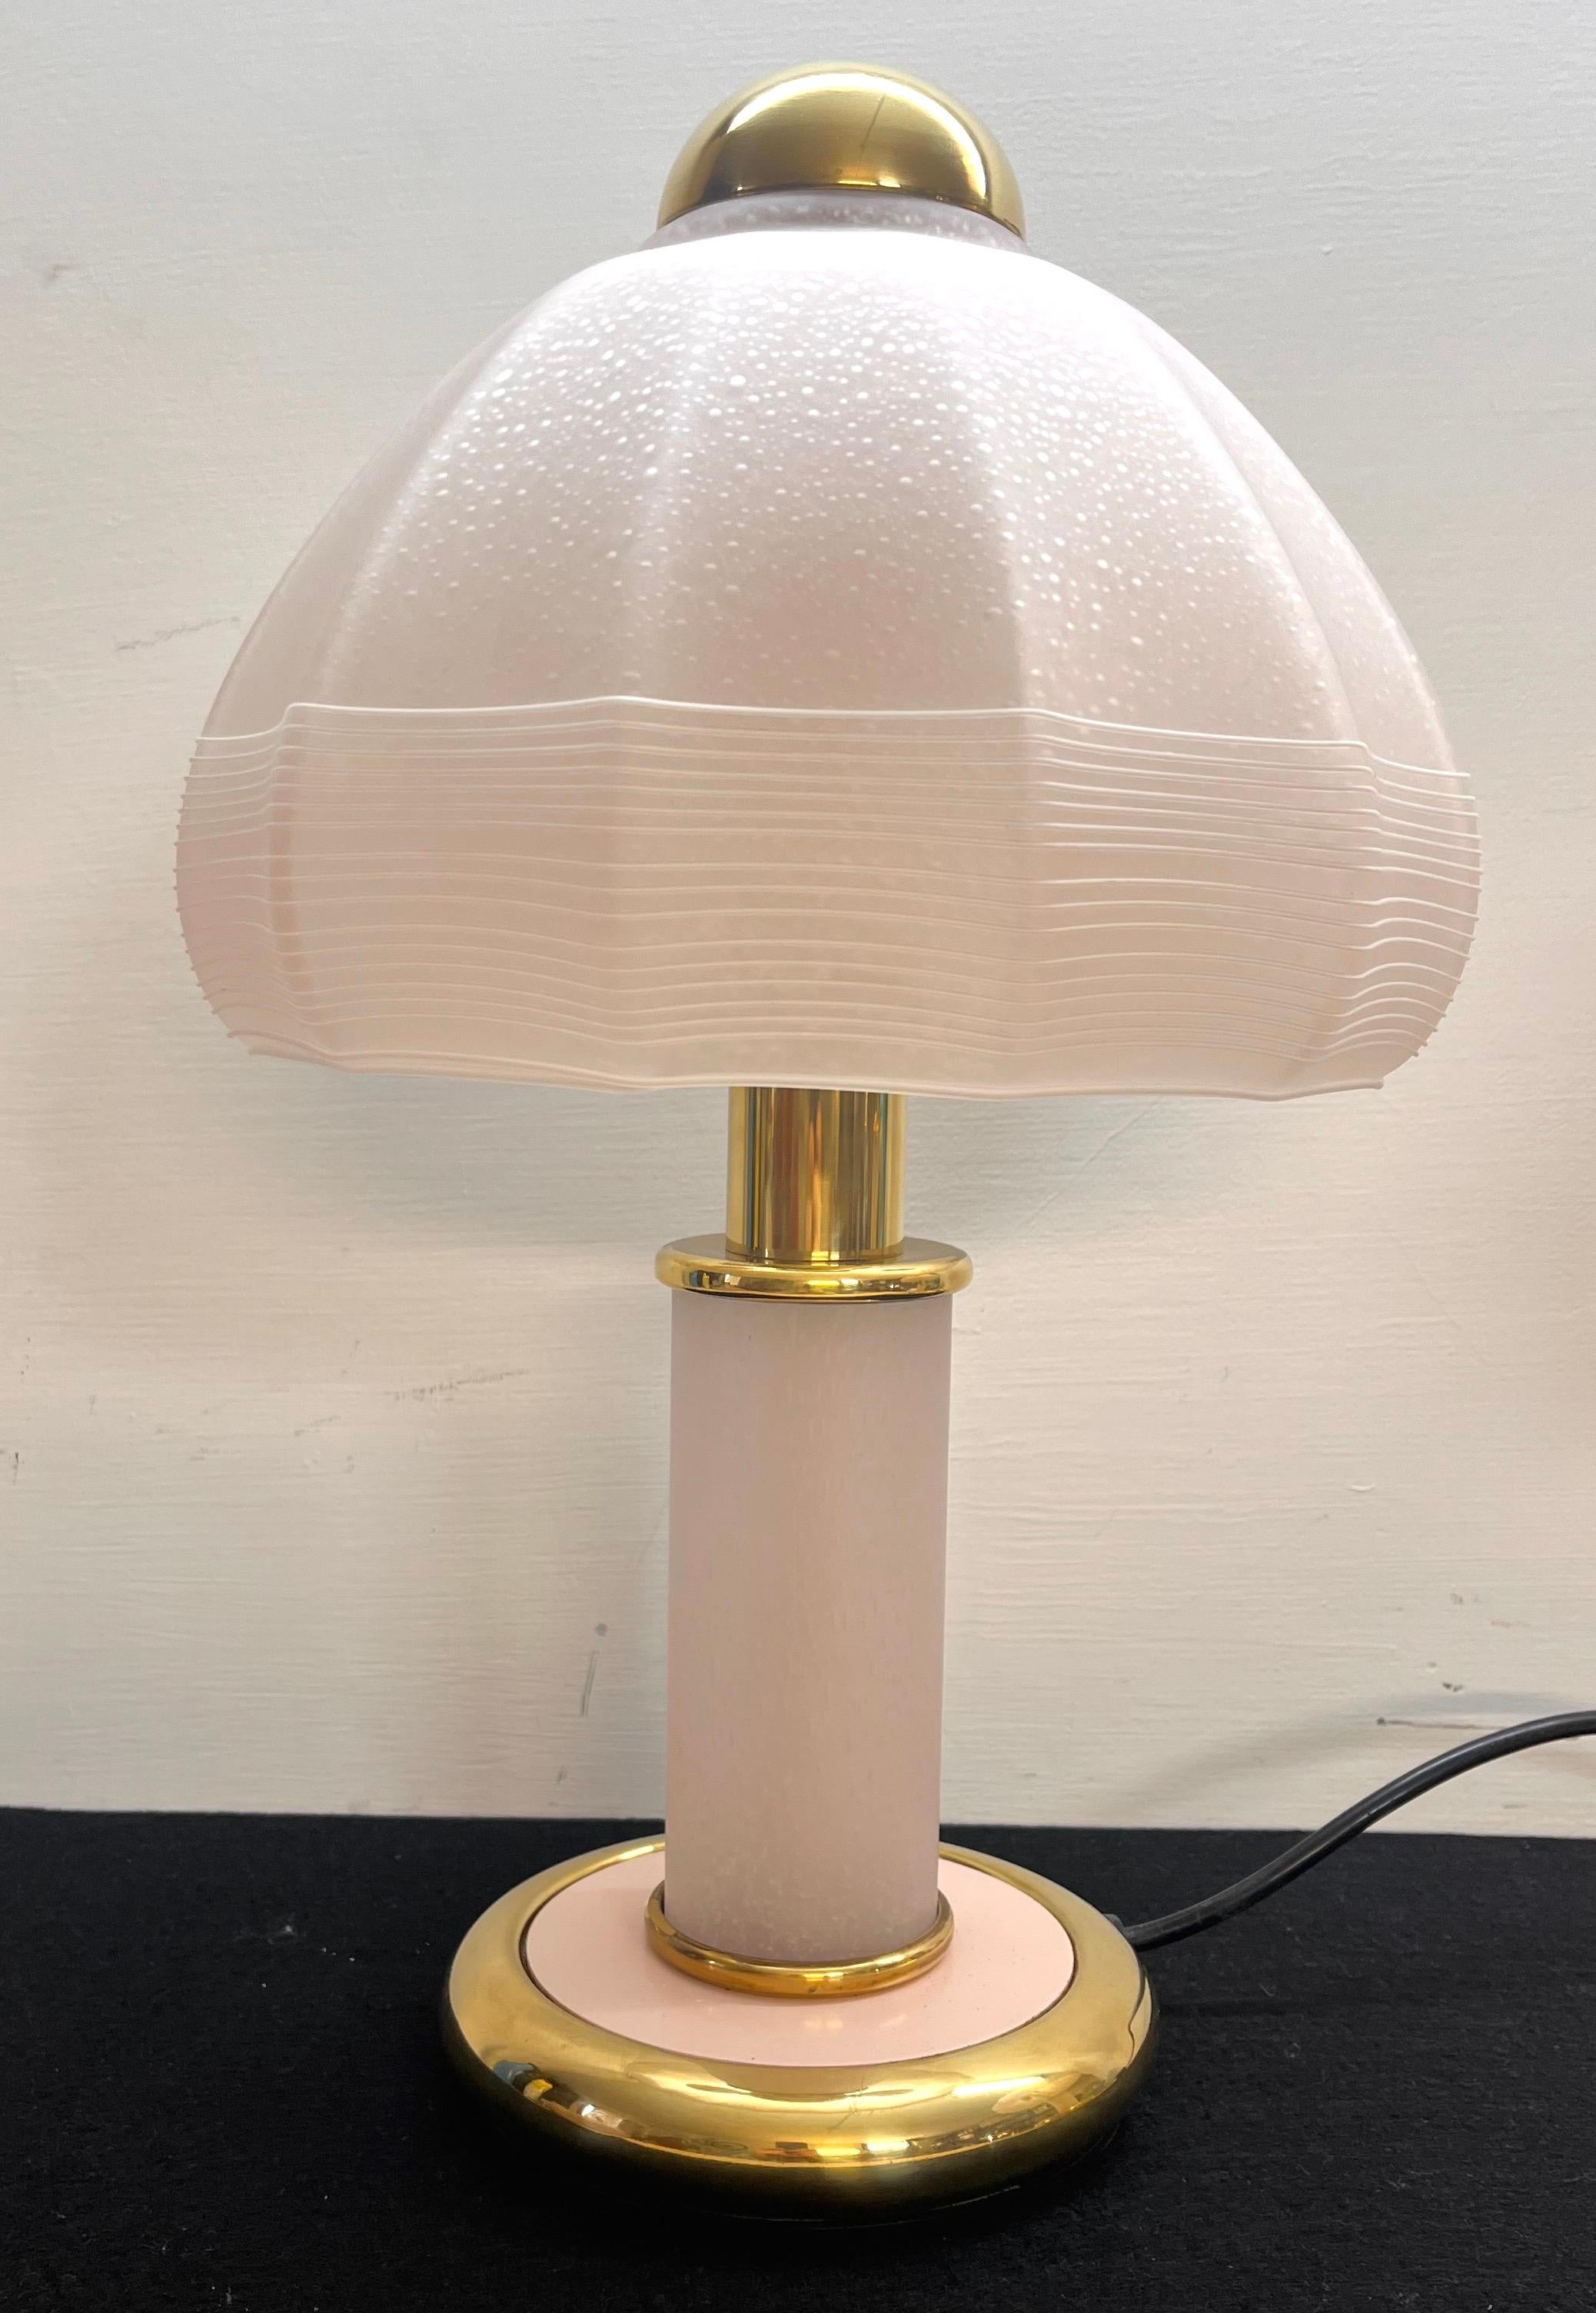 Lampada di F. Fabbian anni 70 vetro di Murano colore rosa con striature bianche vetro integro non scheggiato ottone non graffiato.
En bon état
Dimensioni : Altezza 42 cm diametro cappello 22,5 cm base 15 cm.